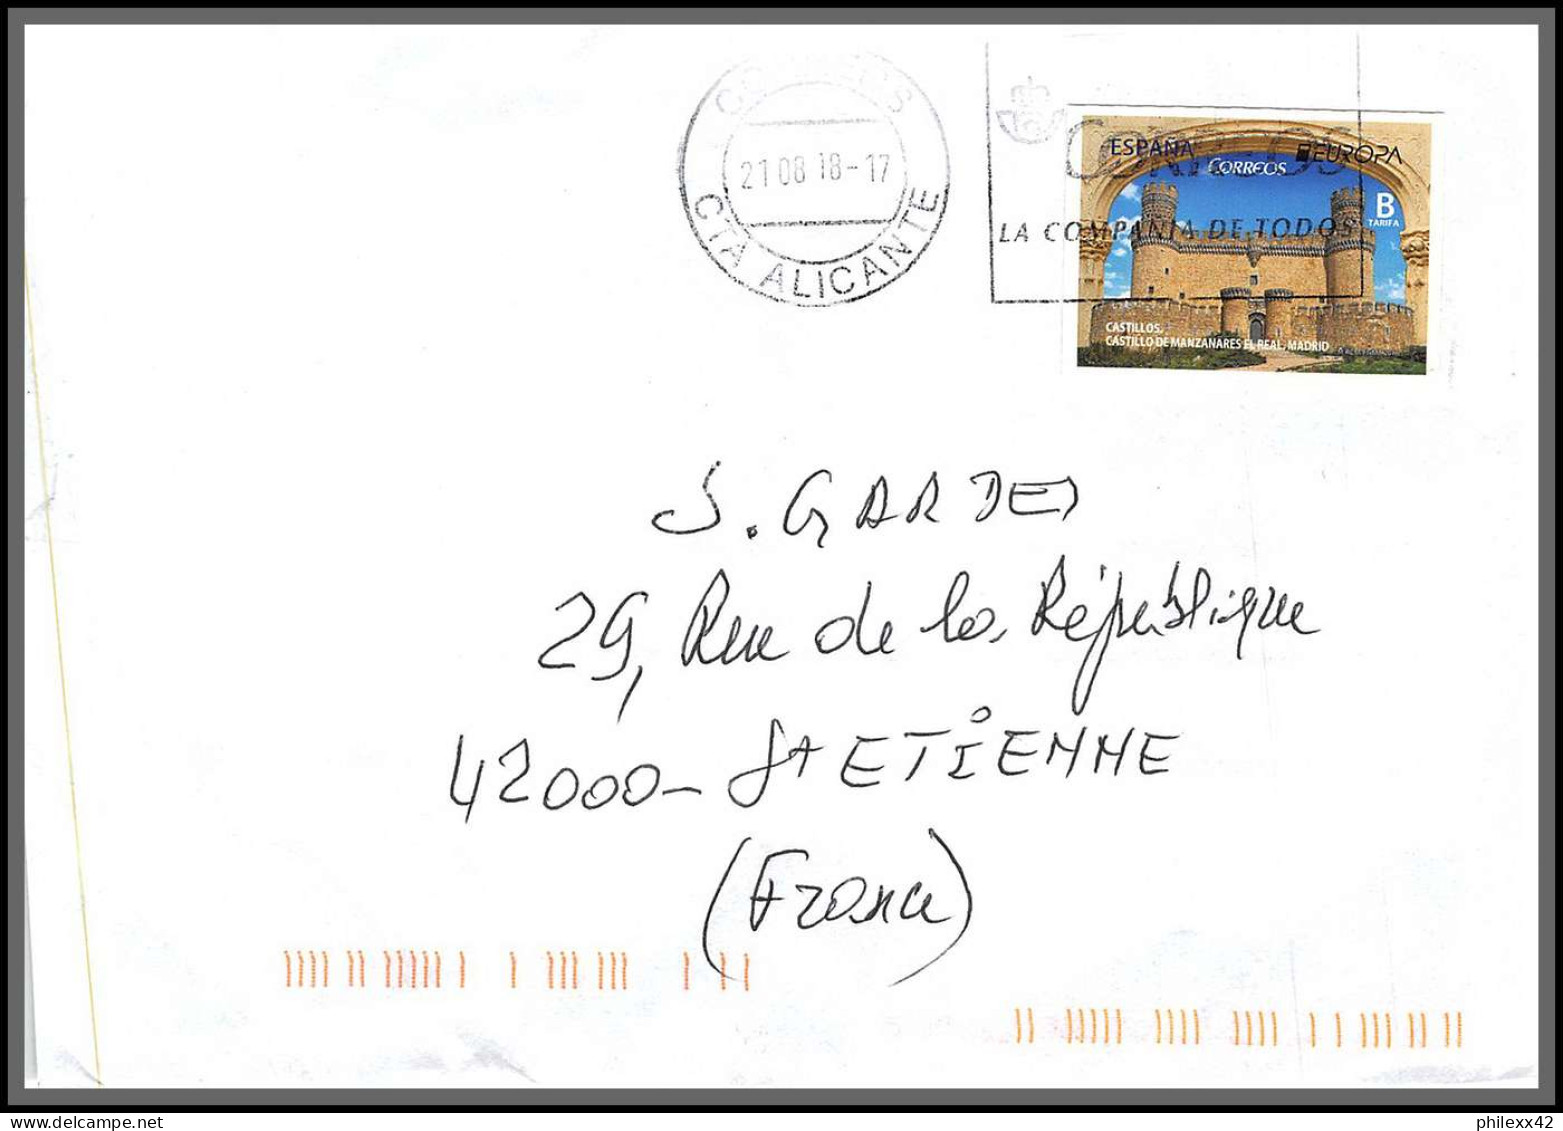 95948- lot de 24 lettres covers enveloppes de l'année 2000/2021 divers affranchissements espagne spain espana